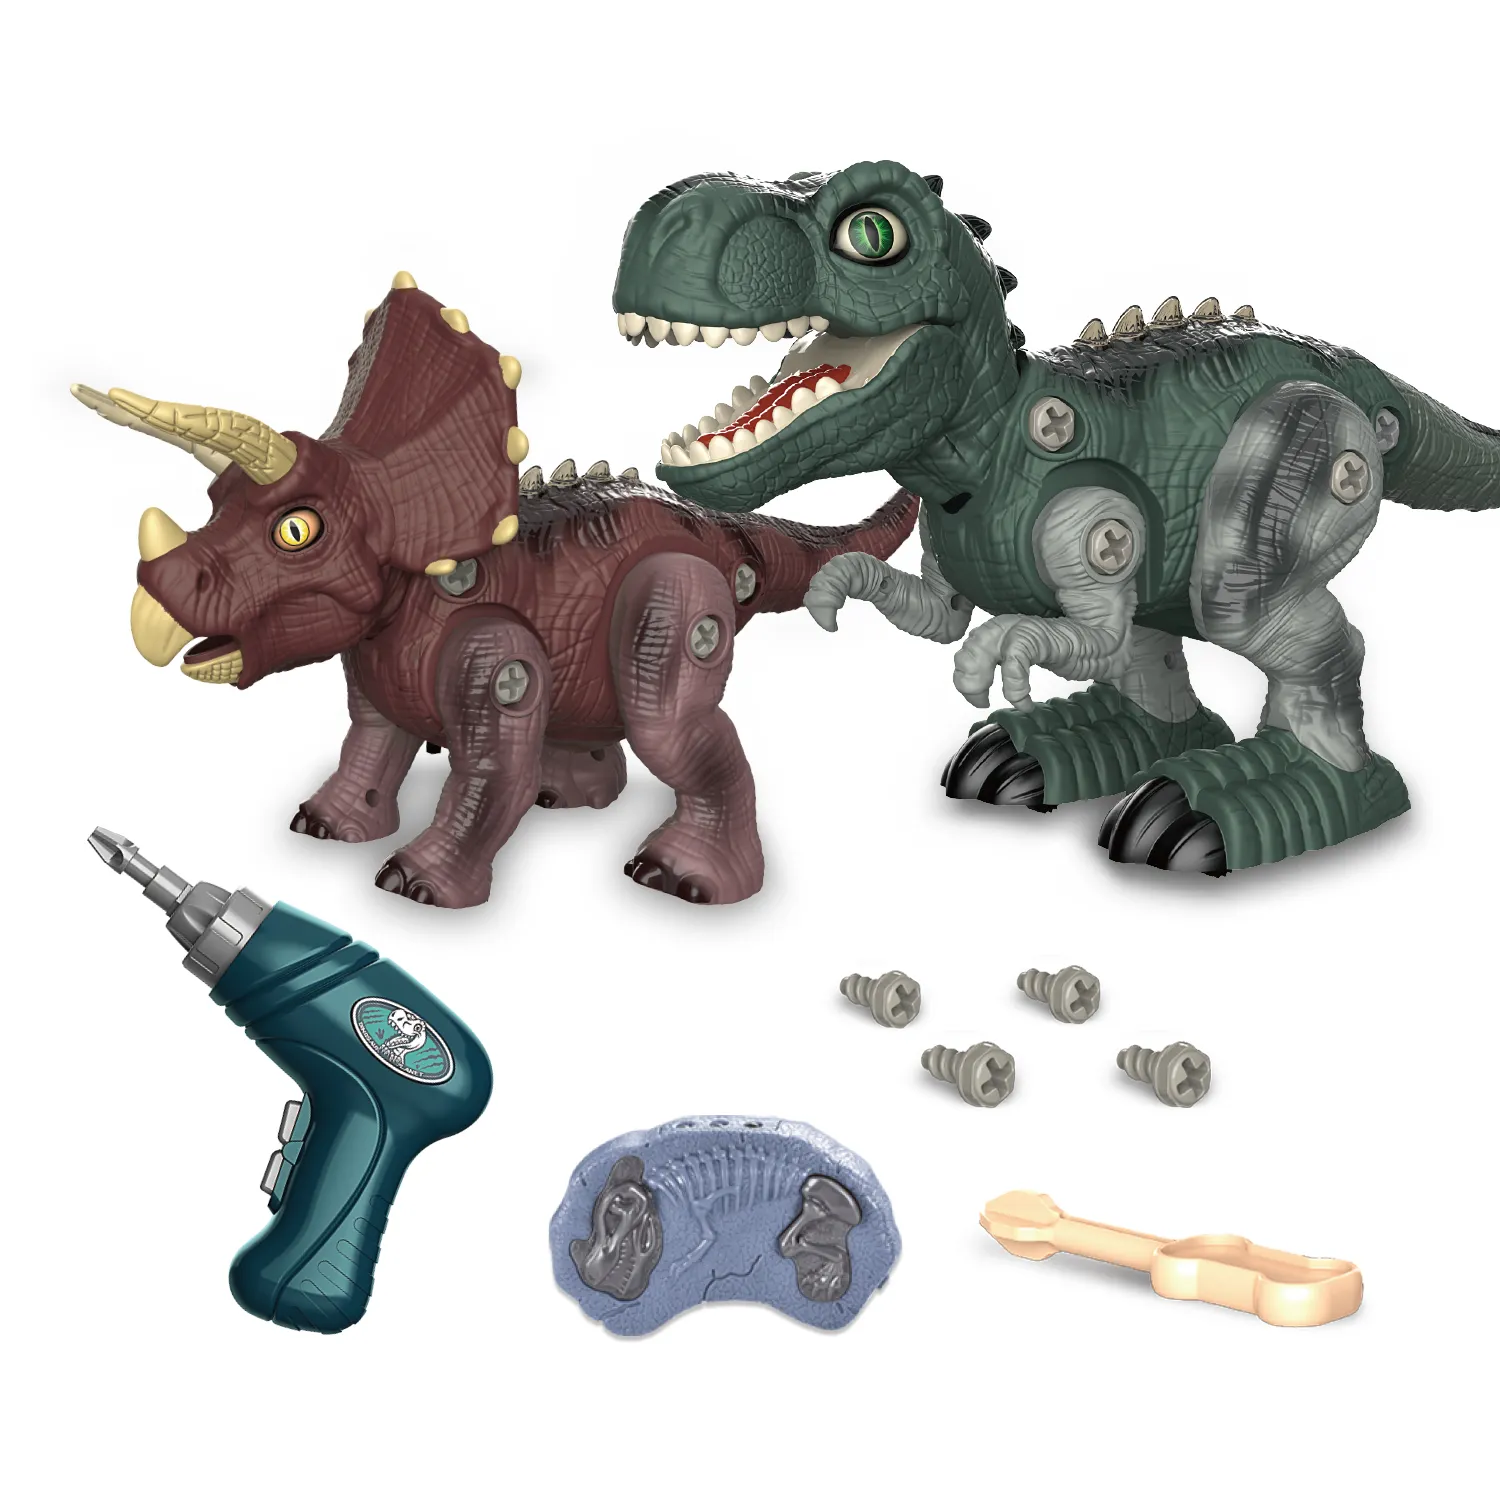 כפול שלט רחוק דינוזאור עם מקדחה חשמלית DIY הרכבה לפרק RC דינוזאור צעצועים לילדים